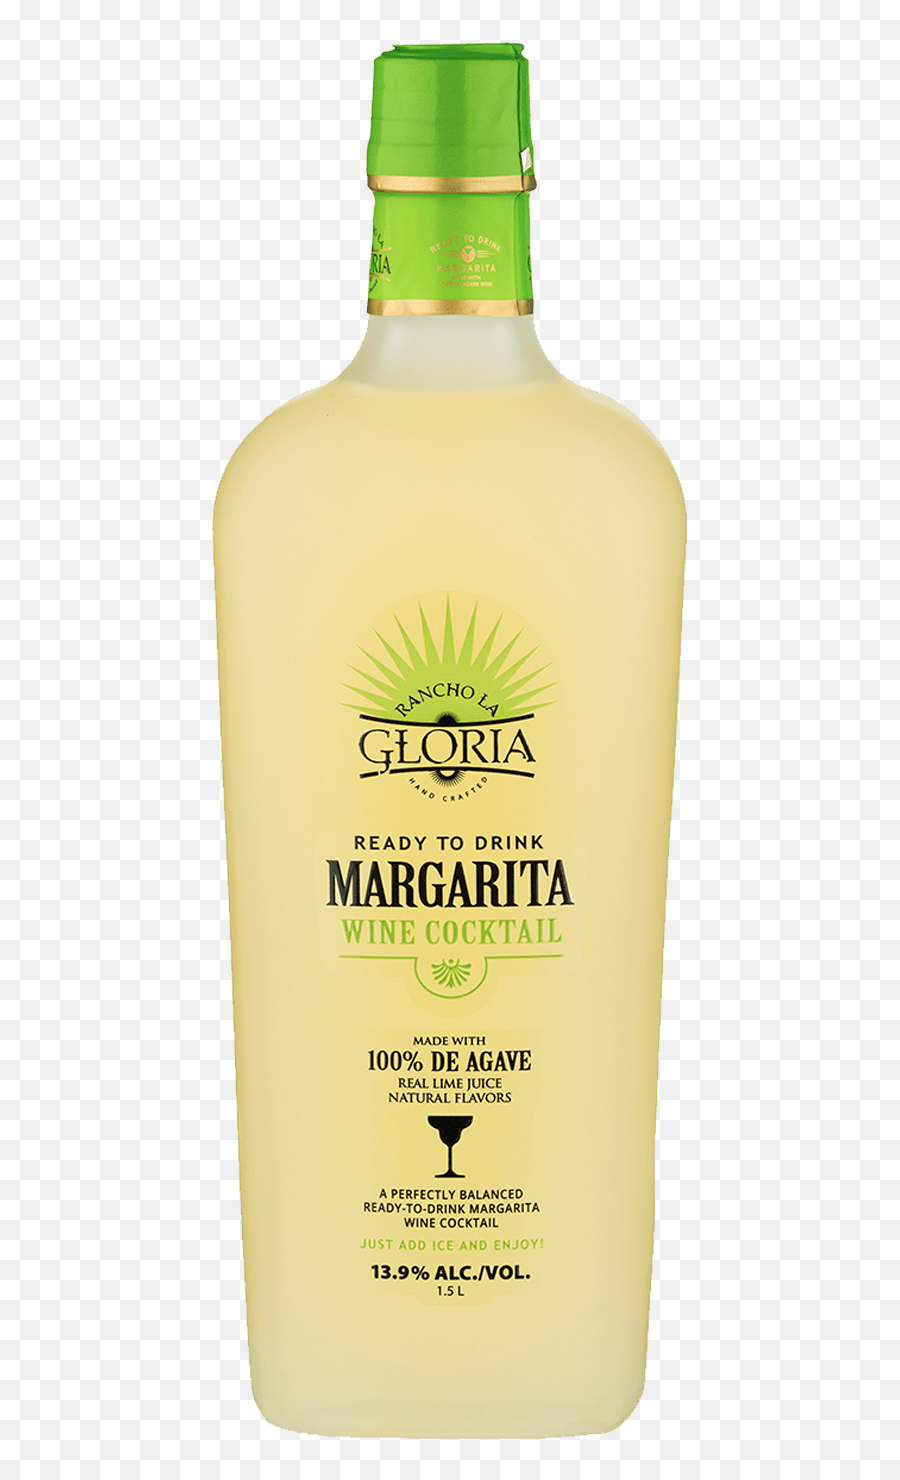 Rancho La Gloria - Margarita Mpl Brands Rancho De Gloria Margarita Wine Png,Margaritas Png